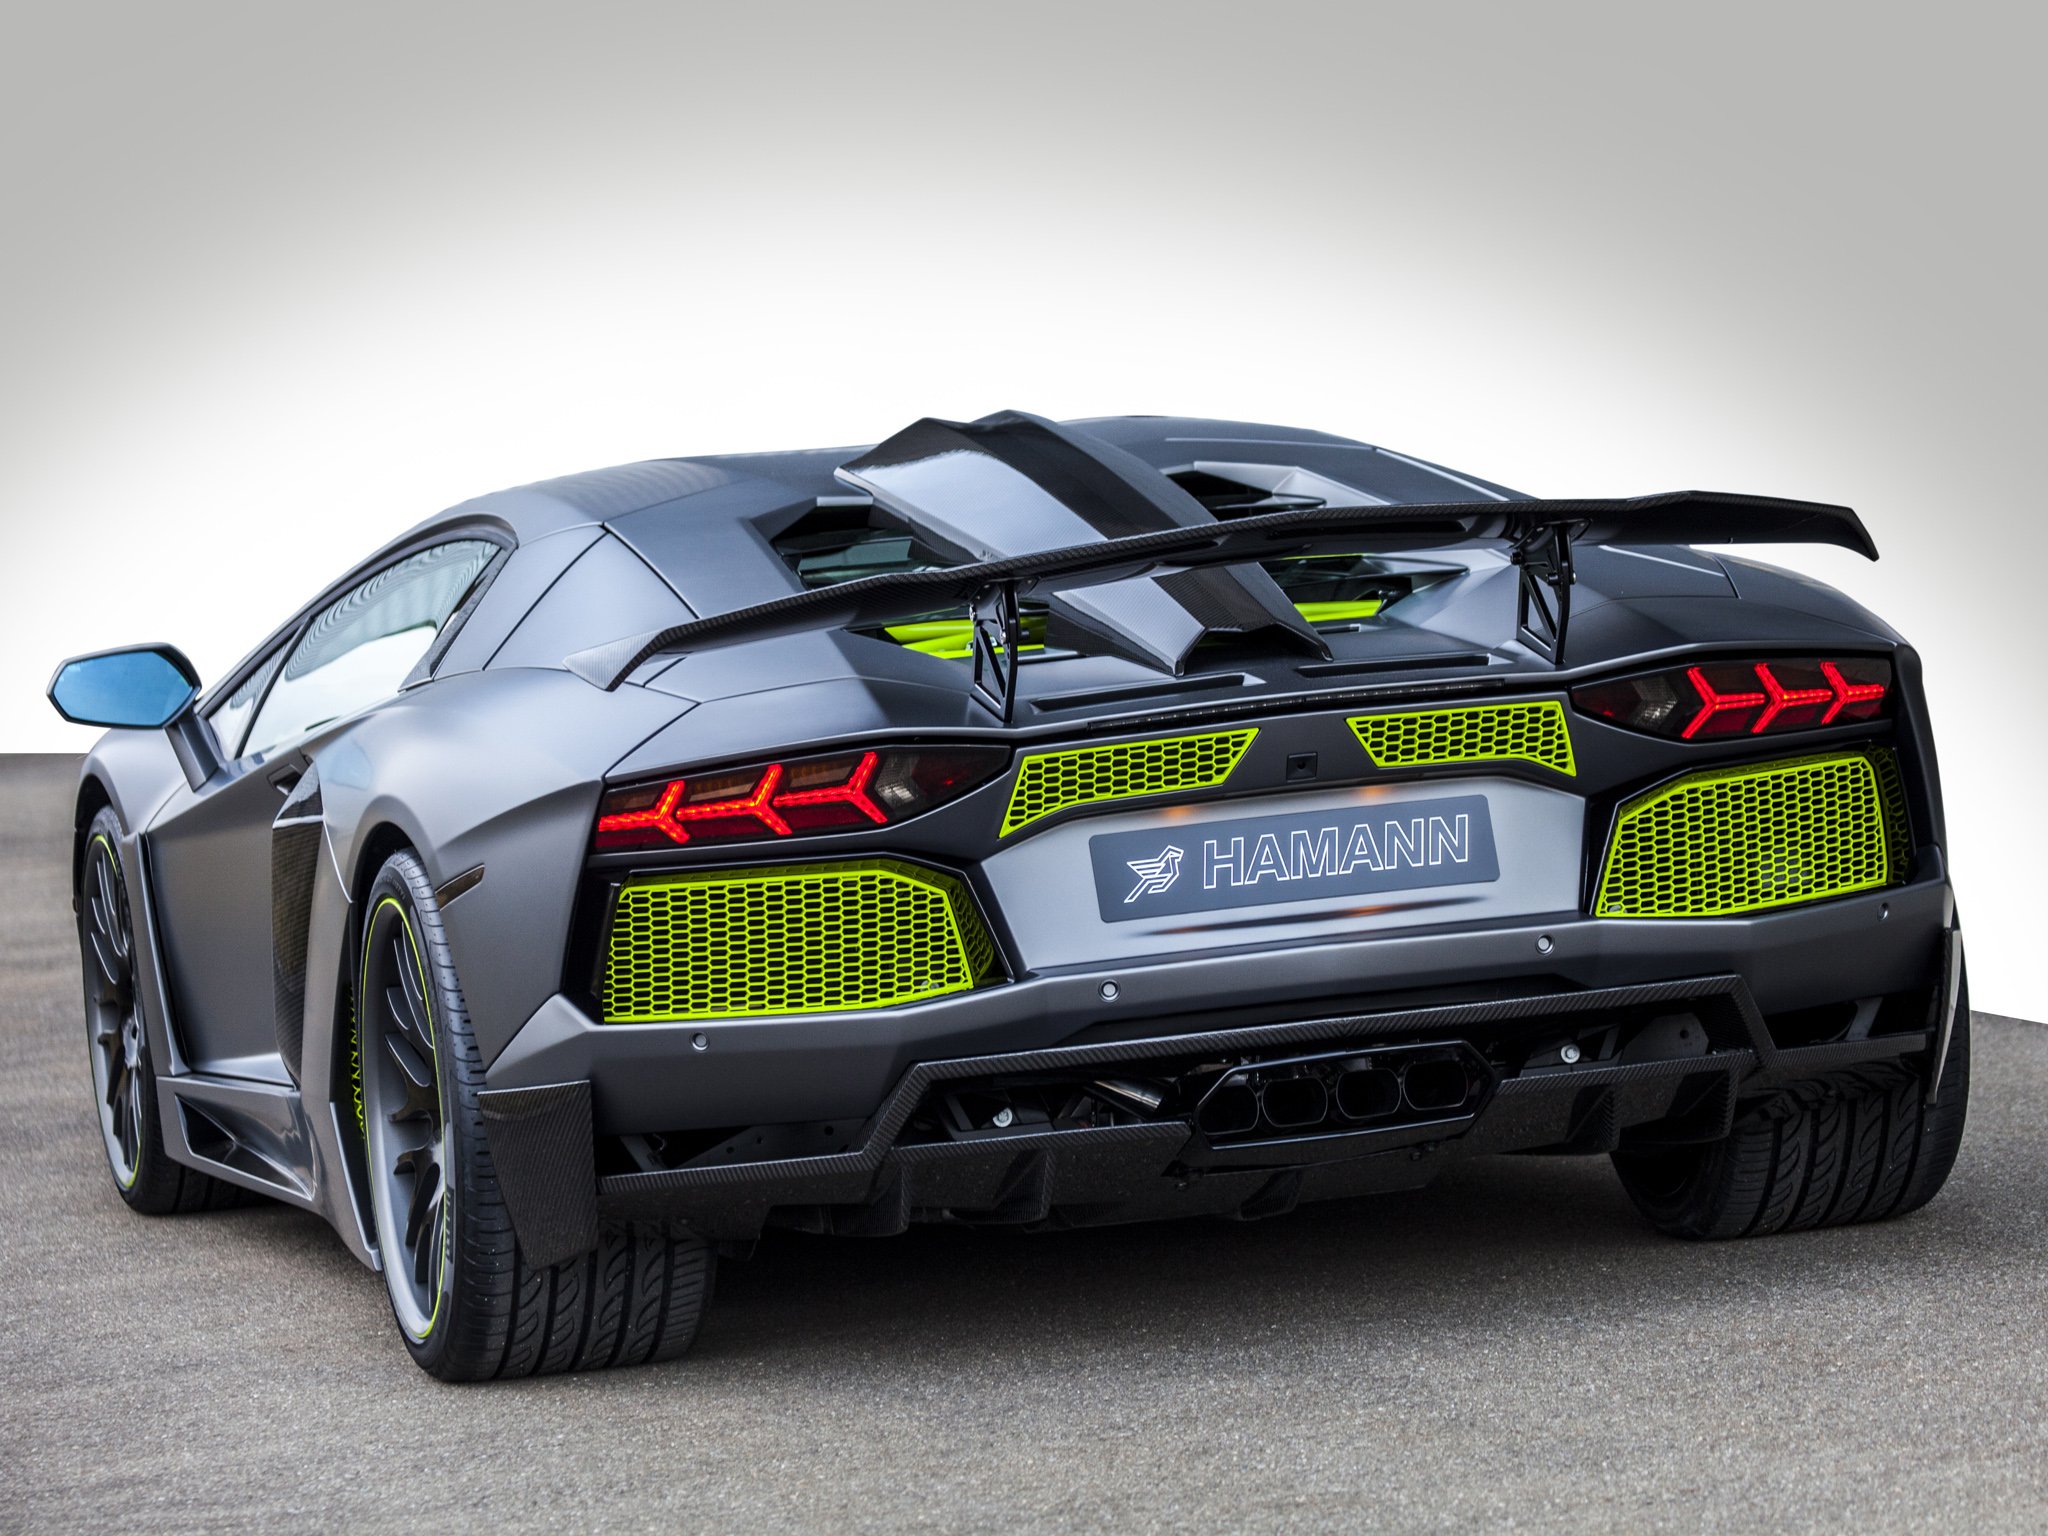 2014, Hamann, Lamborghini, Aventador,  lb834 , Supercar, Tuning Wallpaper